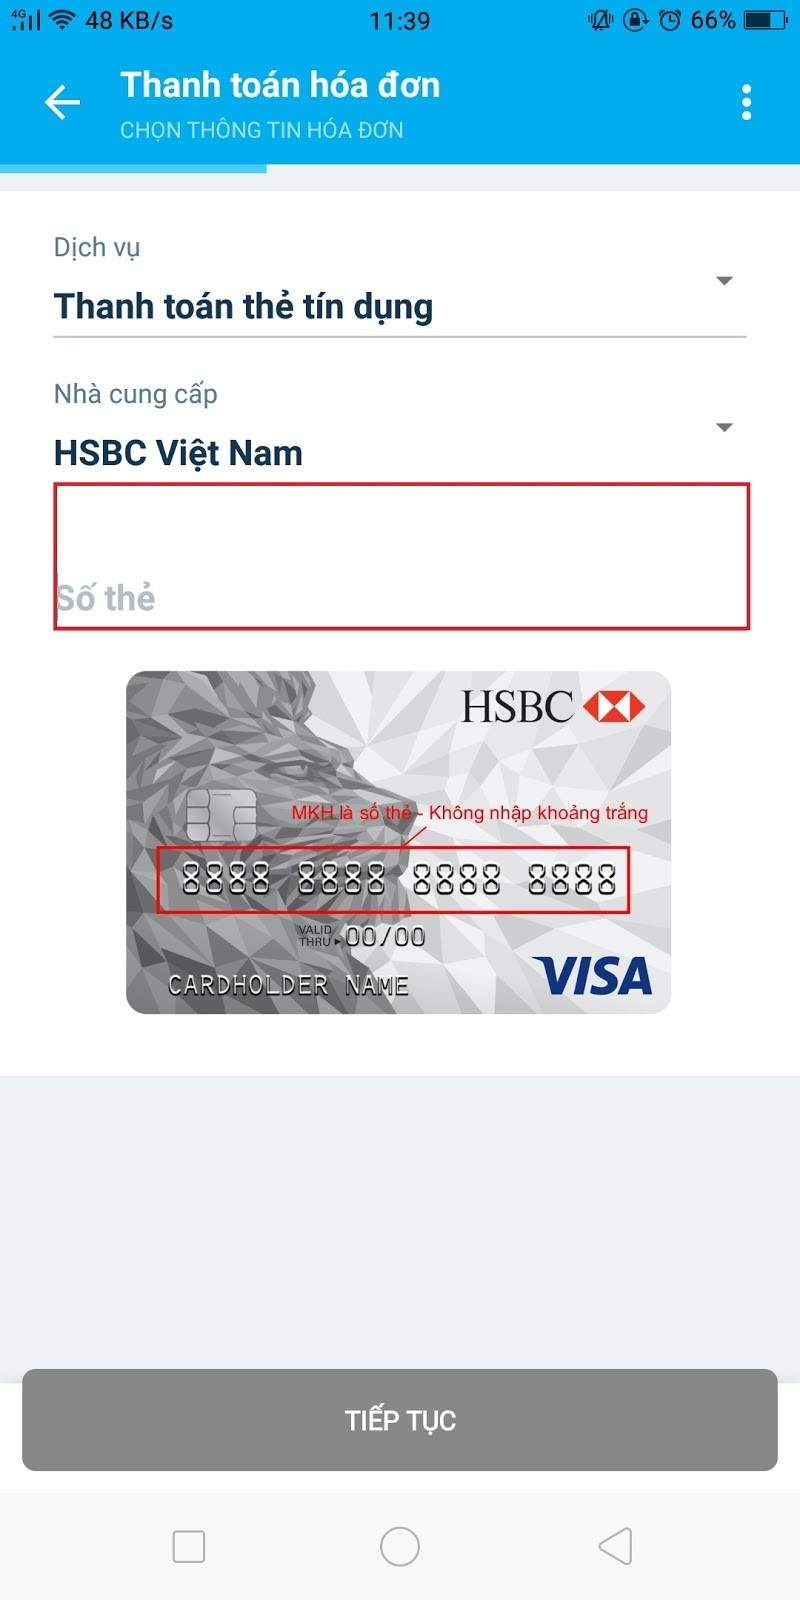 Điền thông tin thẻ ngân hàng